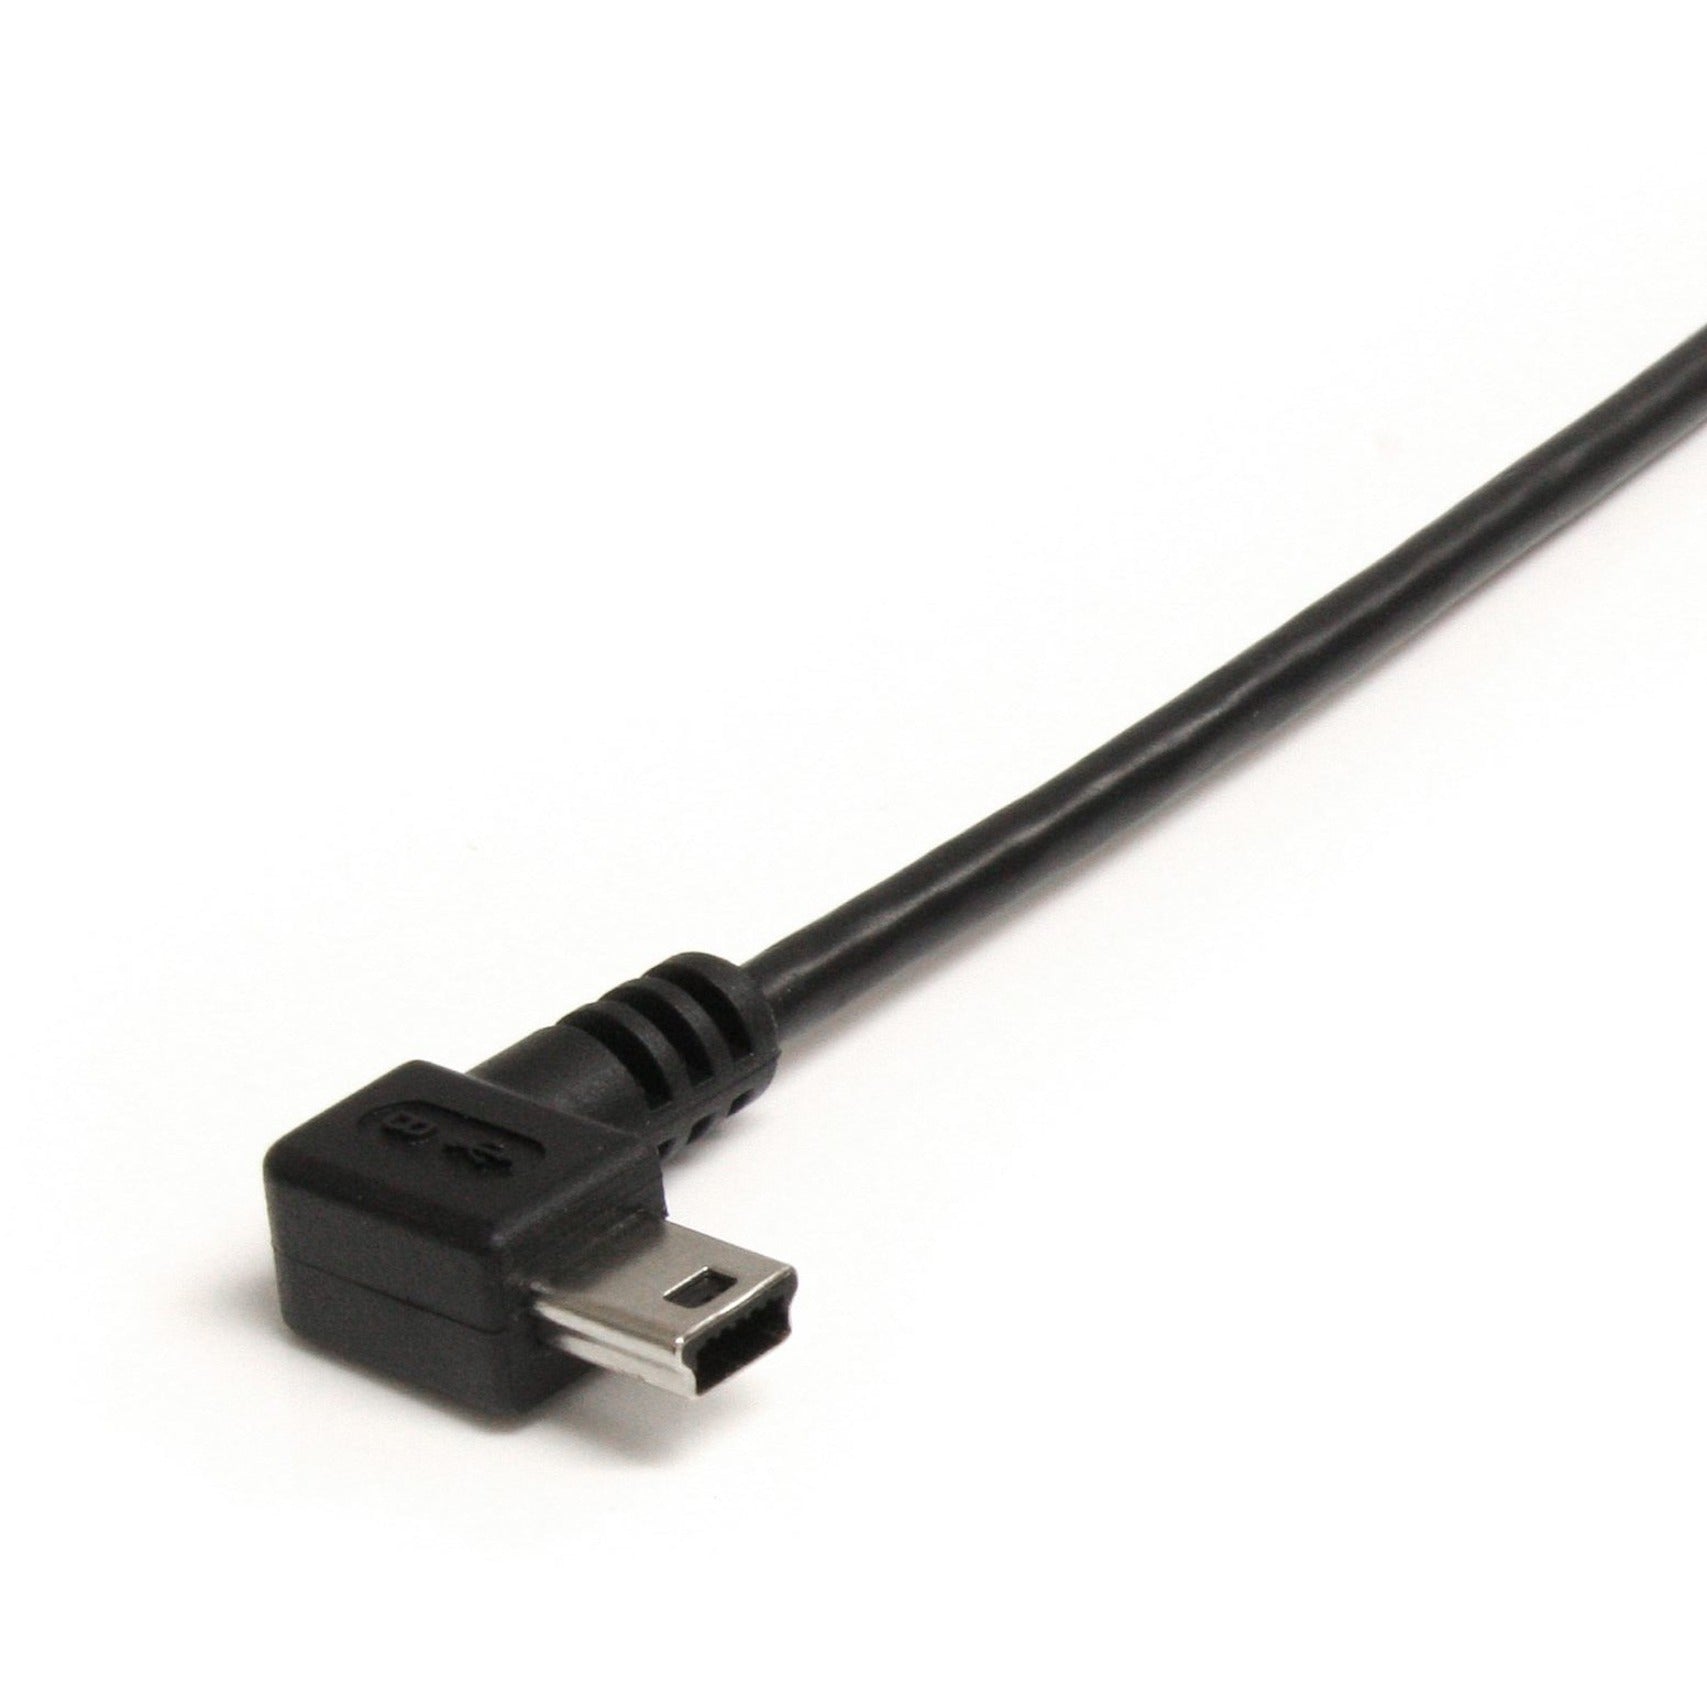 كبل USB2HABM6RA 6 قدم مصنوع من اليو اس بي - من النوع A إلى زاوية صغيرة من النوع B، الشحن، يمتلك معدل نقل بيانات 480 ميجابت في الثانية StarTech.com